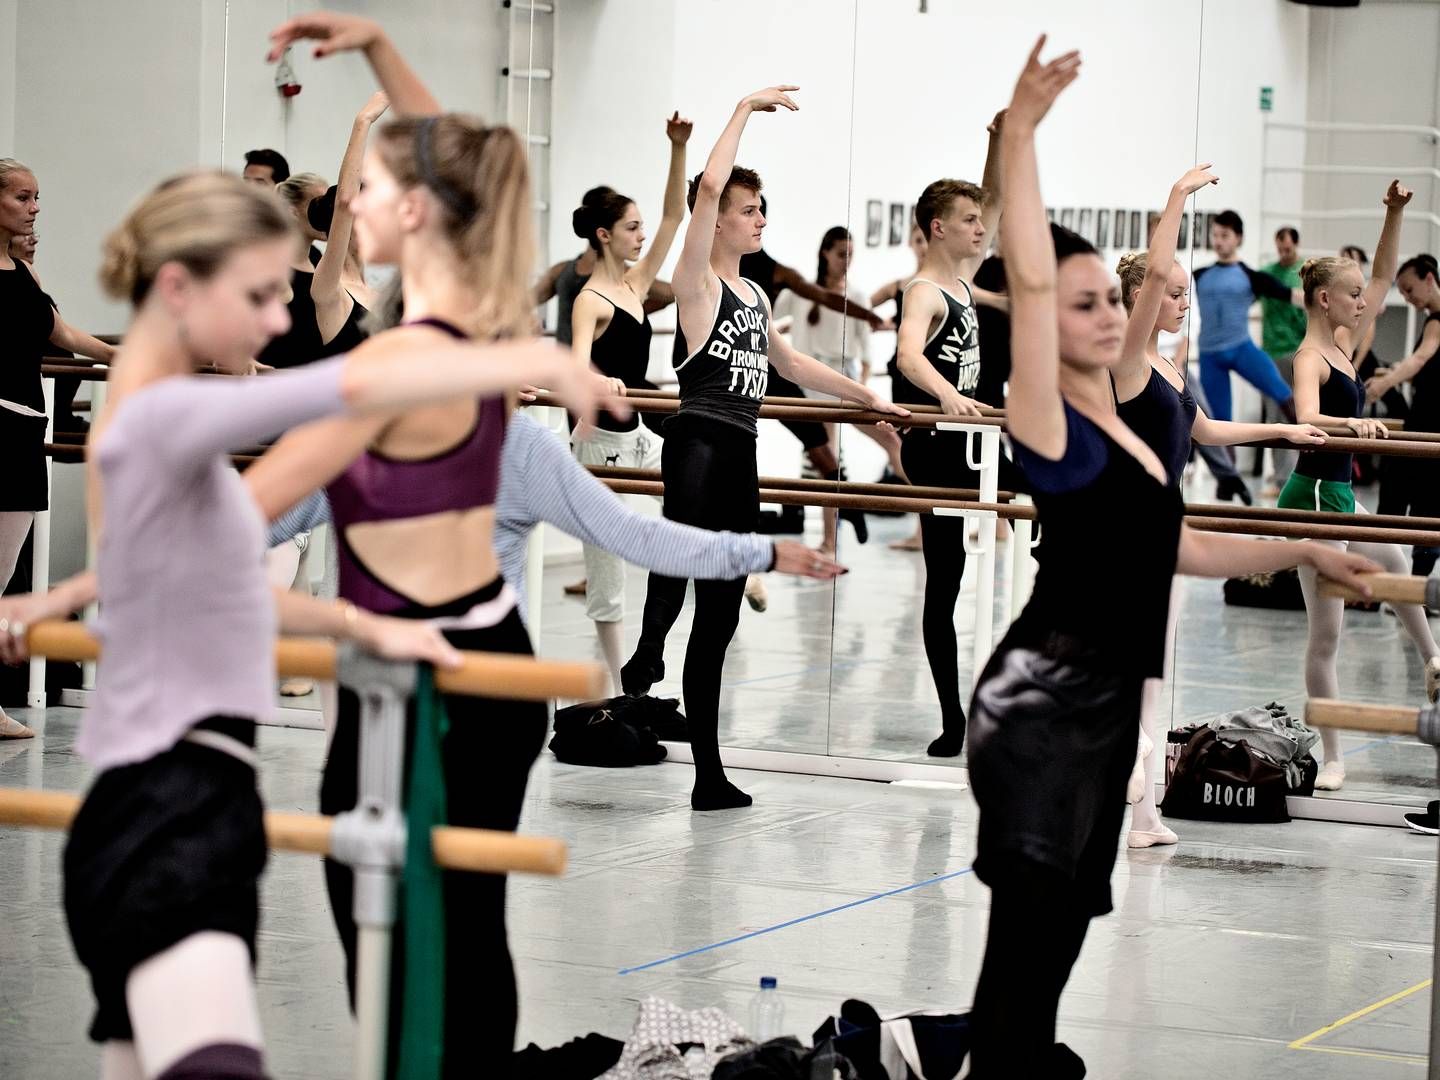 Politiken har talt med 30 tidligere elever, der har gået på balletskolen i perioden 2010-2020, hvoraf 17 har fortalt, at deres tid på skolen resulterede i, at de udviklede spiseforstyrrelser. | Foto: Joachim Adrian